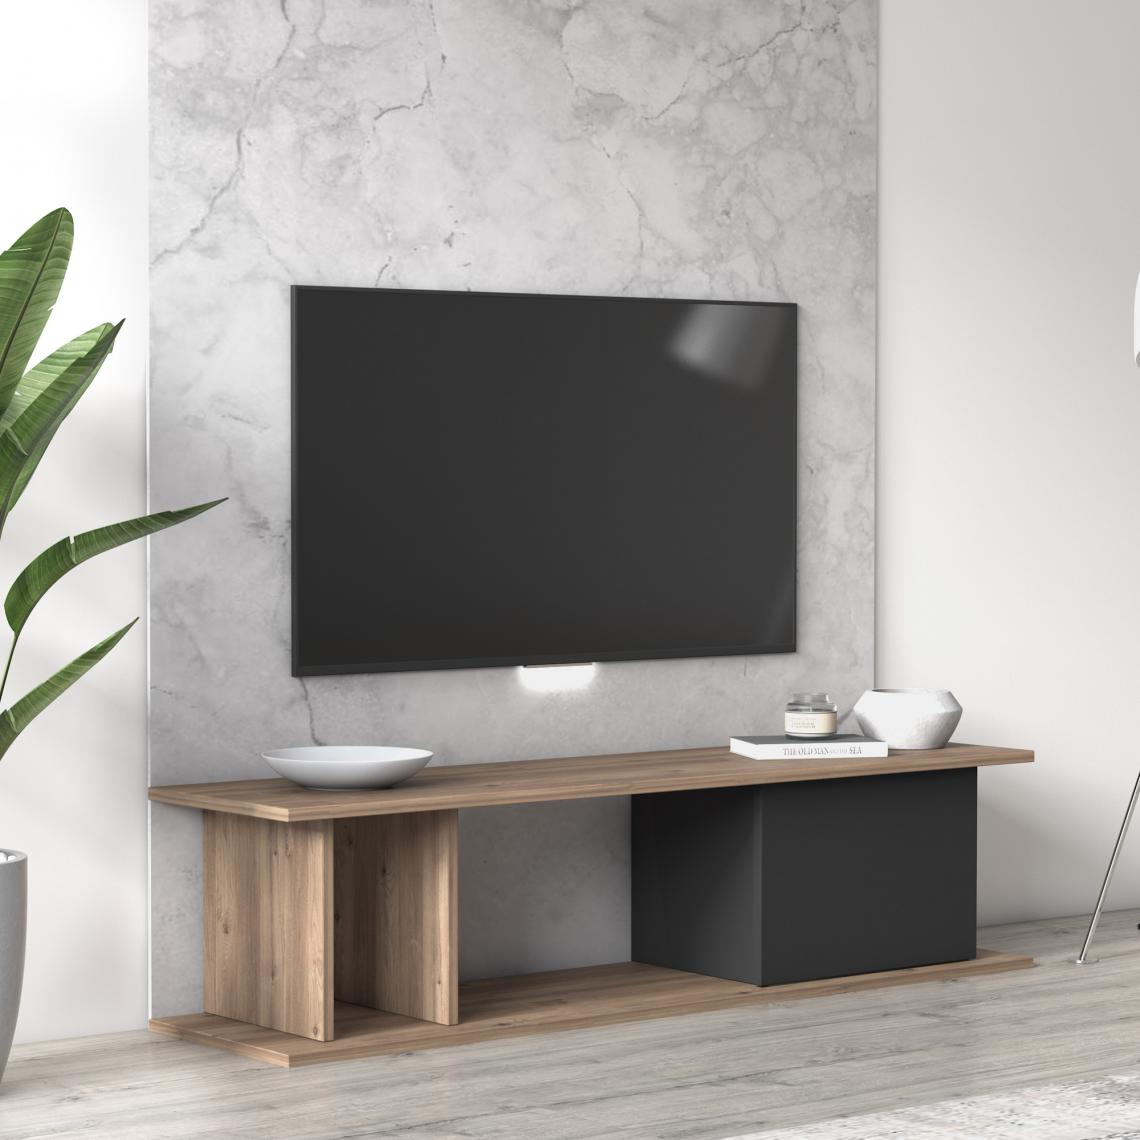 Alter - Meuble de salon essentiel meuble TV avec une porte battante et compartiments ouverts, 140 x 35 x 34 cm, coloris chêne et anthracite - Meubles TV, Hi-Fi